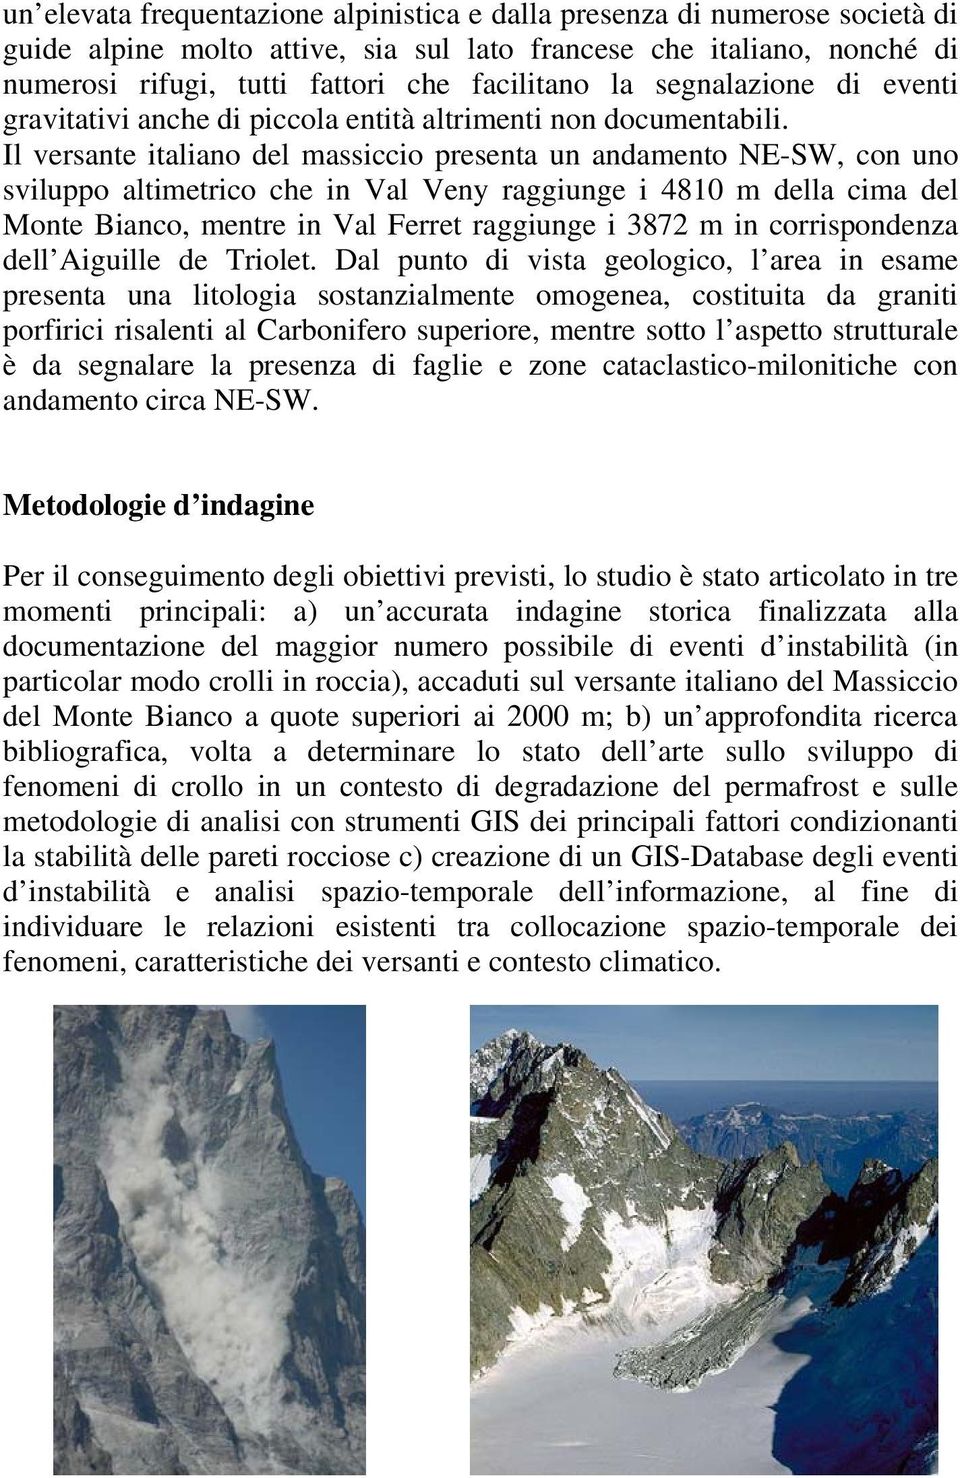 Il versante italiano del massiccio presenta un andamento NE-SW, con uno sviluppo altimetrico che in Val Veny raggiunge i 4810 m della cima del Monte Bianco, mentre in Val Ferret raggiunge i 3872 m in